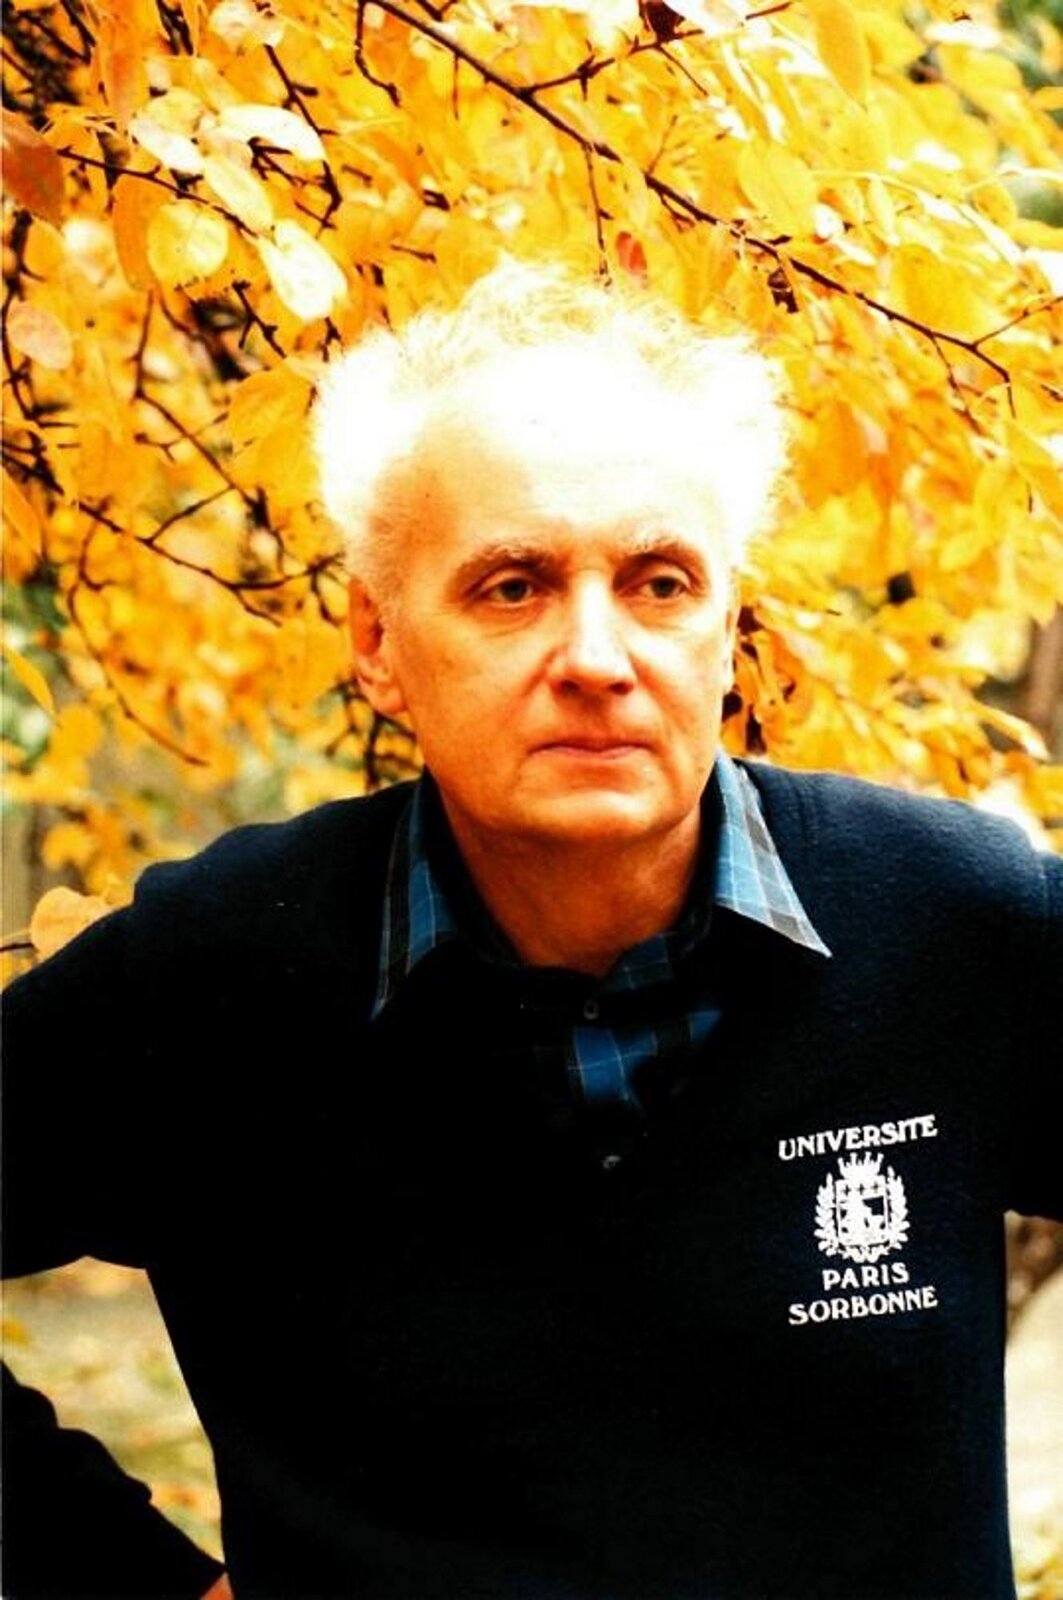 Fotografia przedstawia Wojciecha Kilara, która została wykonana przez fotografa Andrzeja Klukowskiego wczesną jesinną. Postać ma siwe włosy, ma wpatrzoną i zamyśloną twarz. Ubrany jest w koszulę w kratkę i niebieski sweter z logo po lewej stronie: UNIVERSITE PARIS SORBONNE.